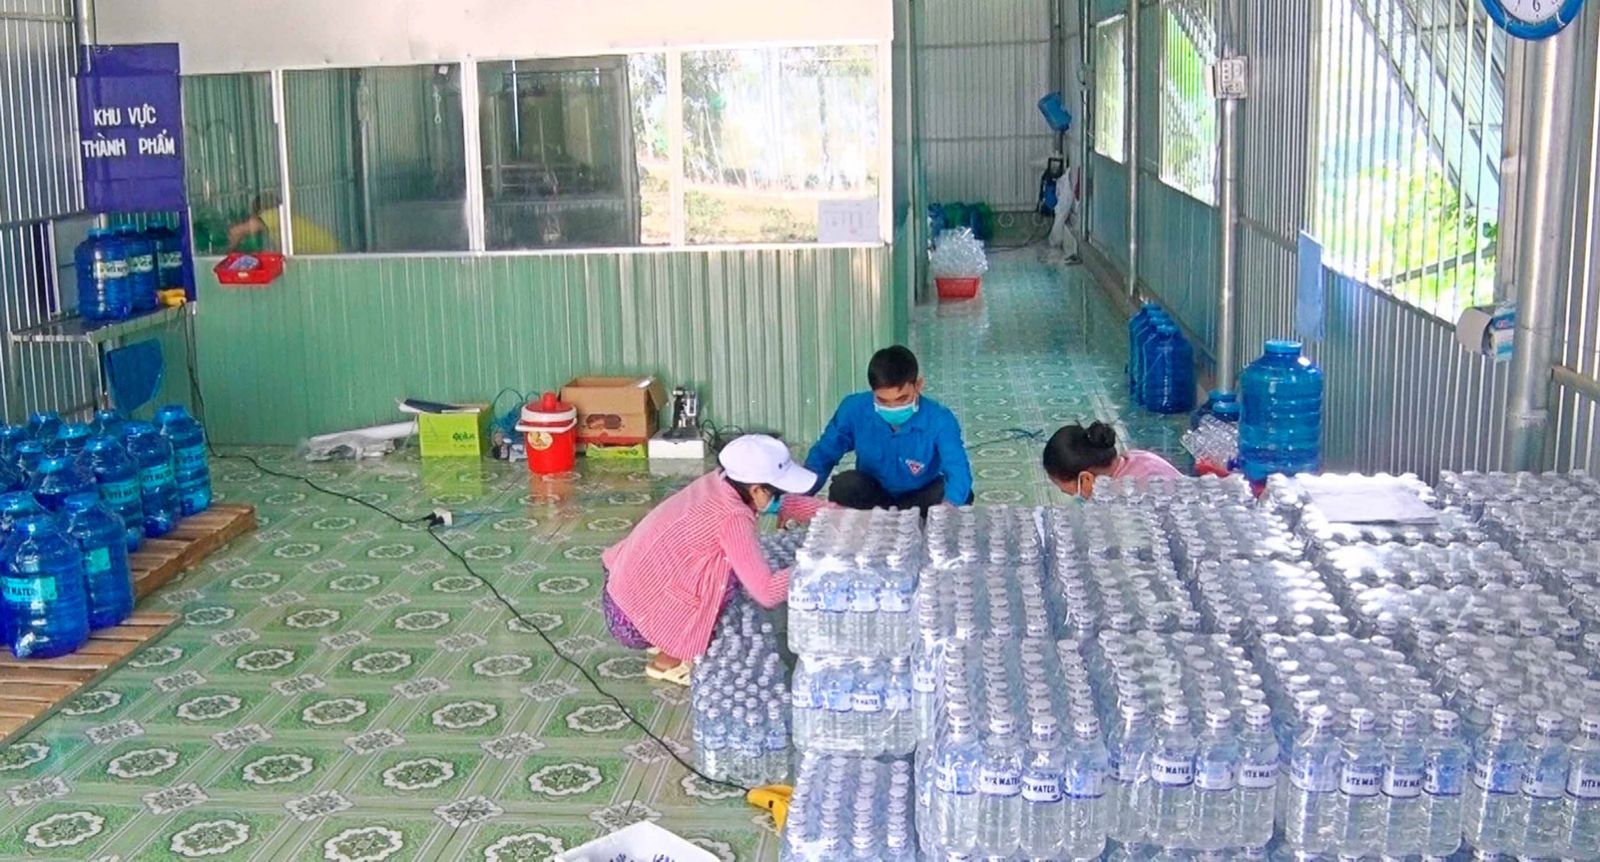 Hợp tác xã Thanh niên Bắc Hòa giải quyết việc làm cho 4 lao động nhàn rỗi ở địa phương